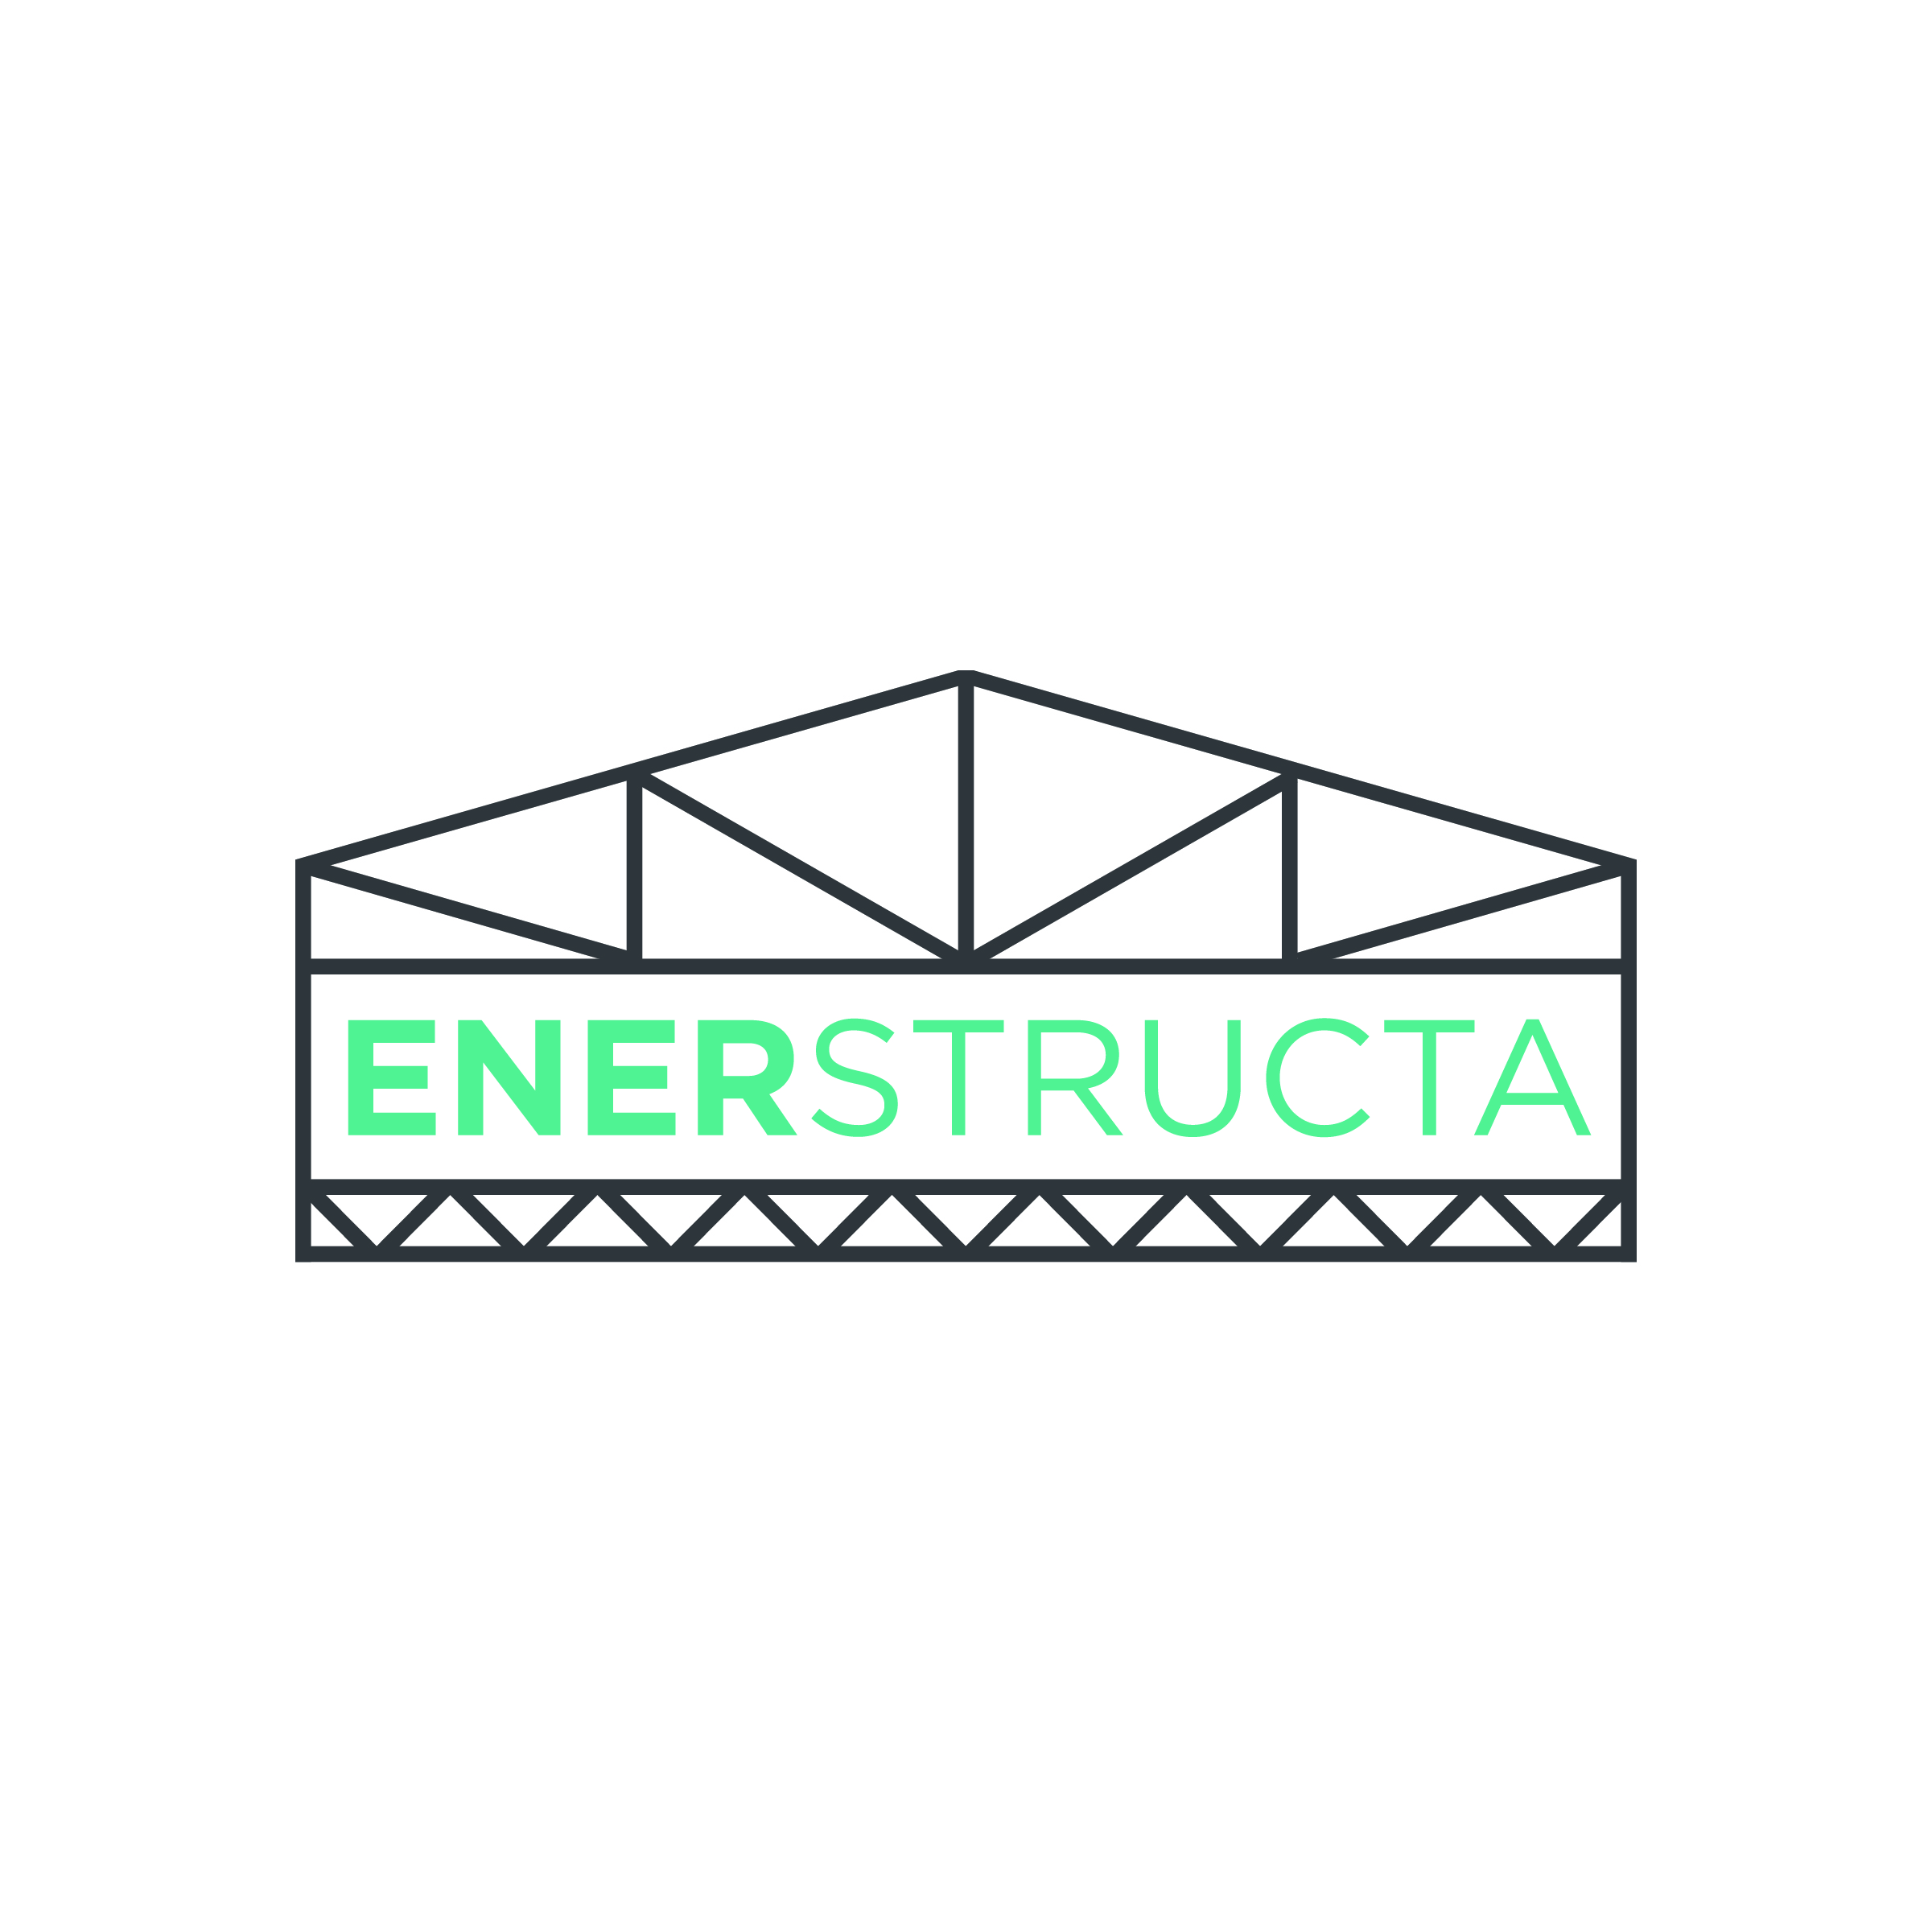 ENERSTRUCTA LLC company logo